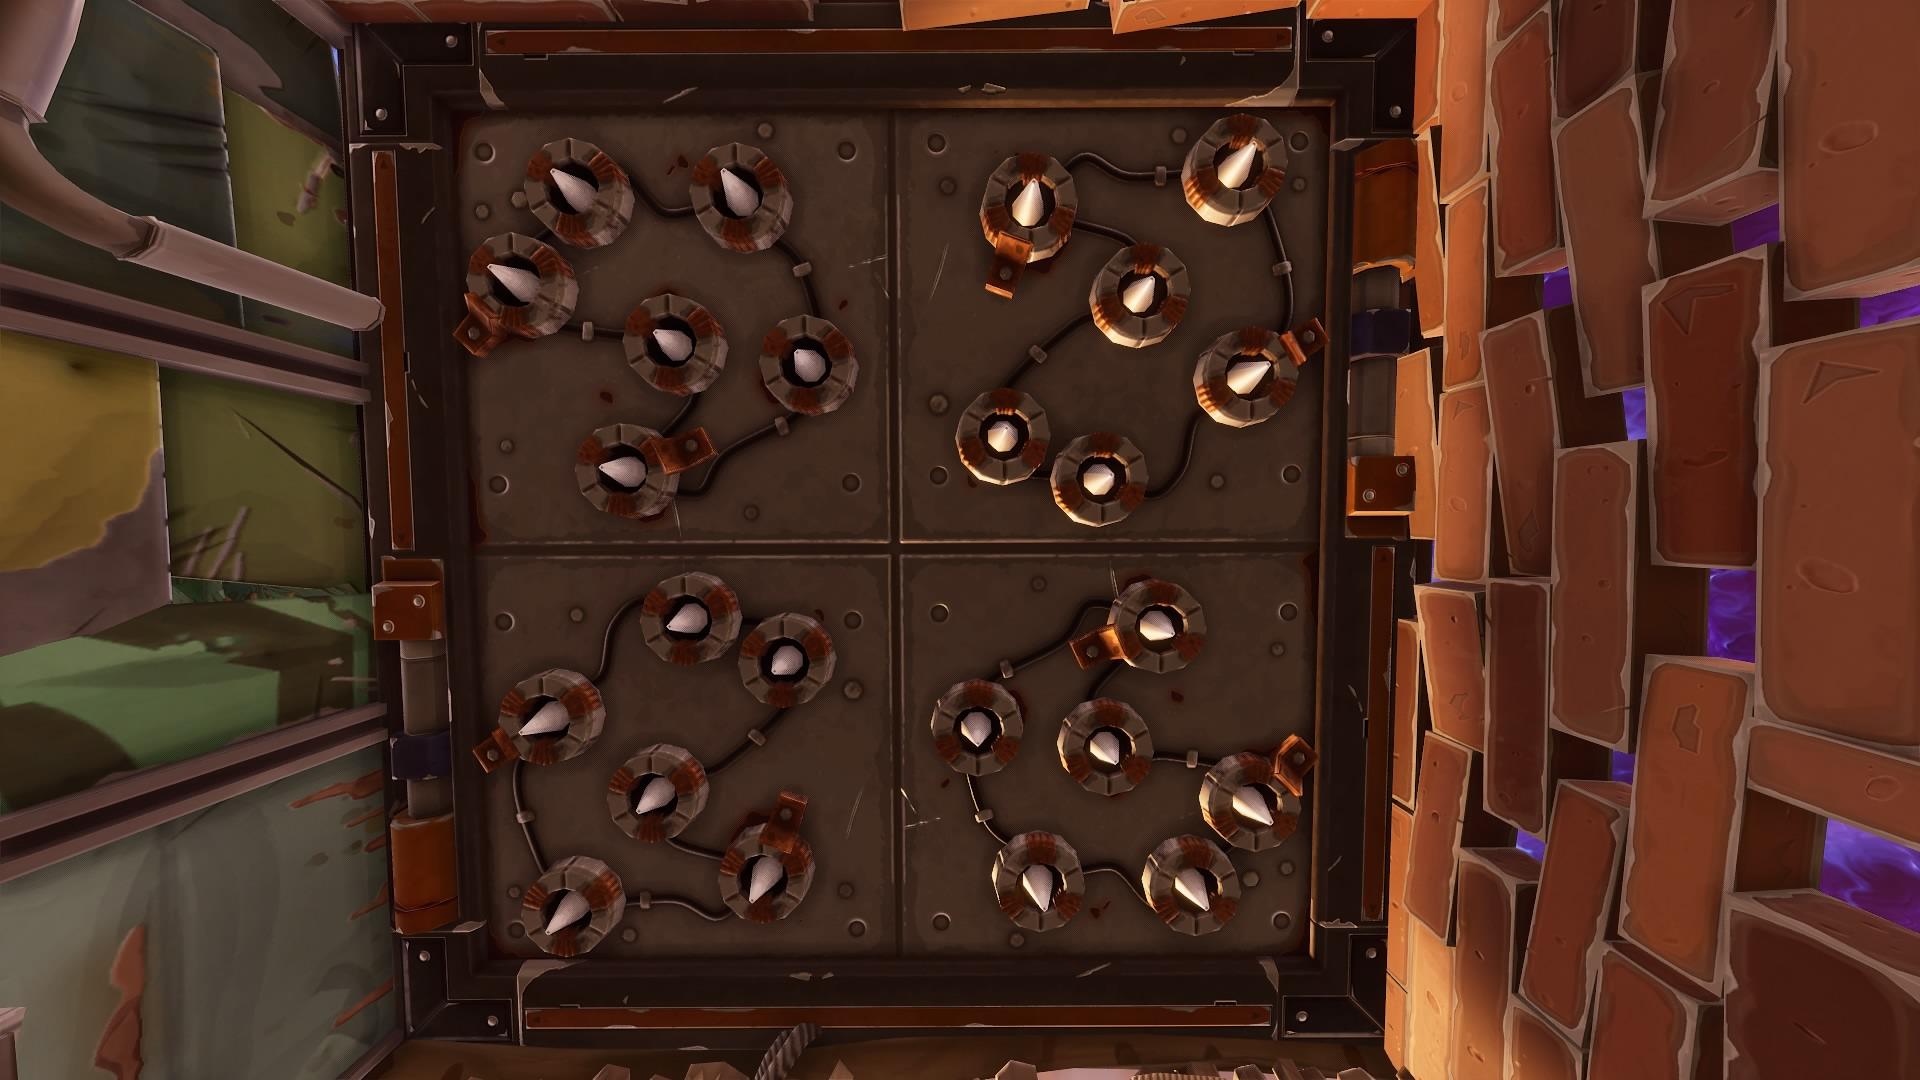 Image of traps inside Fortnite battle royale